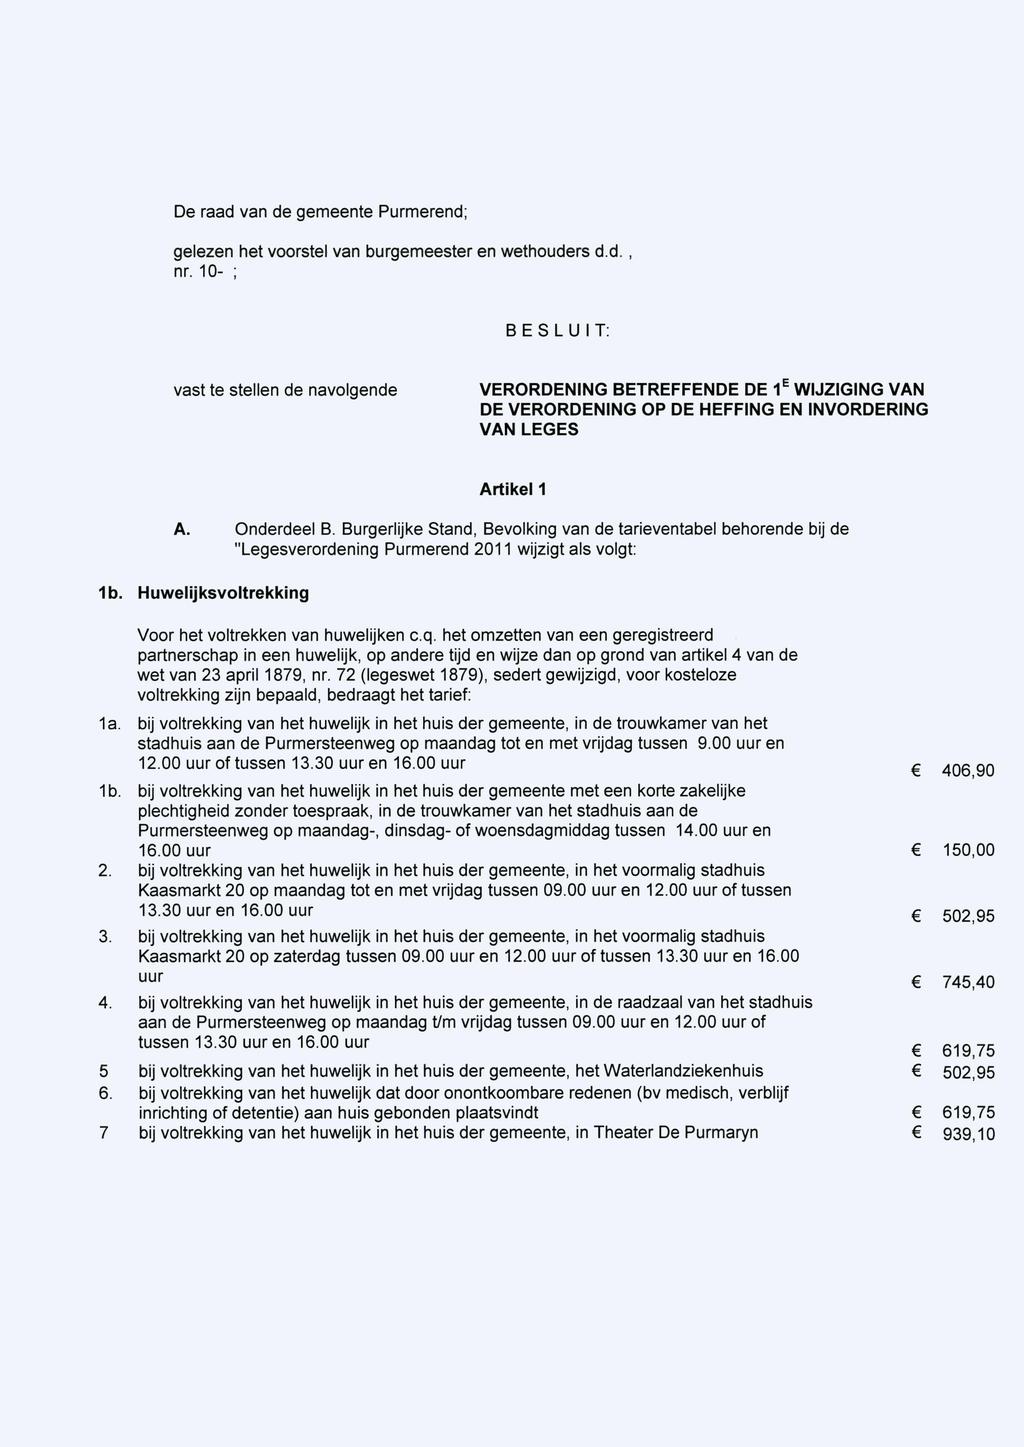 De raad van de gemeente Purmerend; gelezen het voorstel van burgemeester en wethouders d.d., nr.